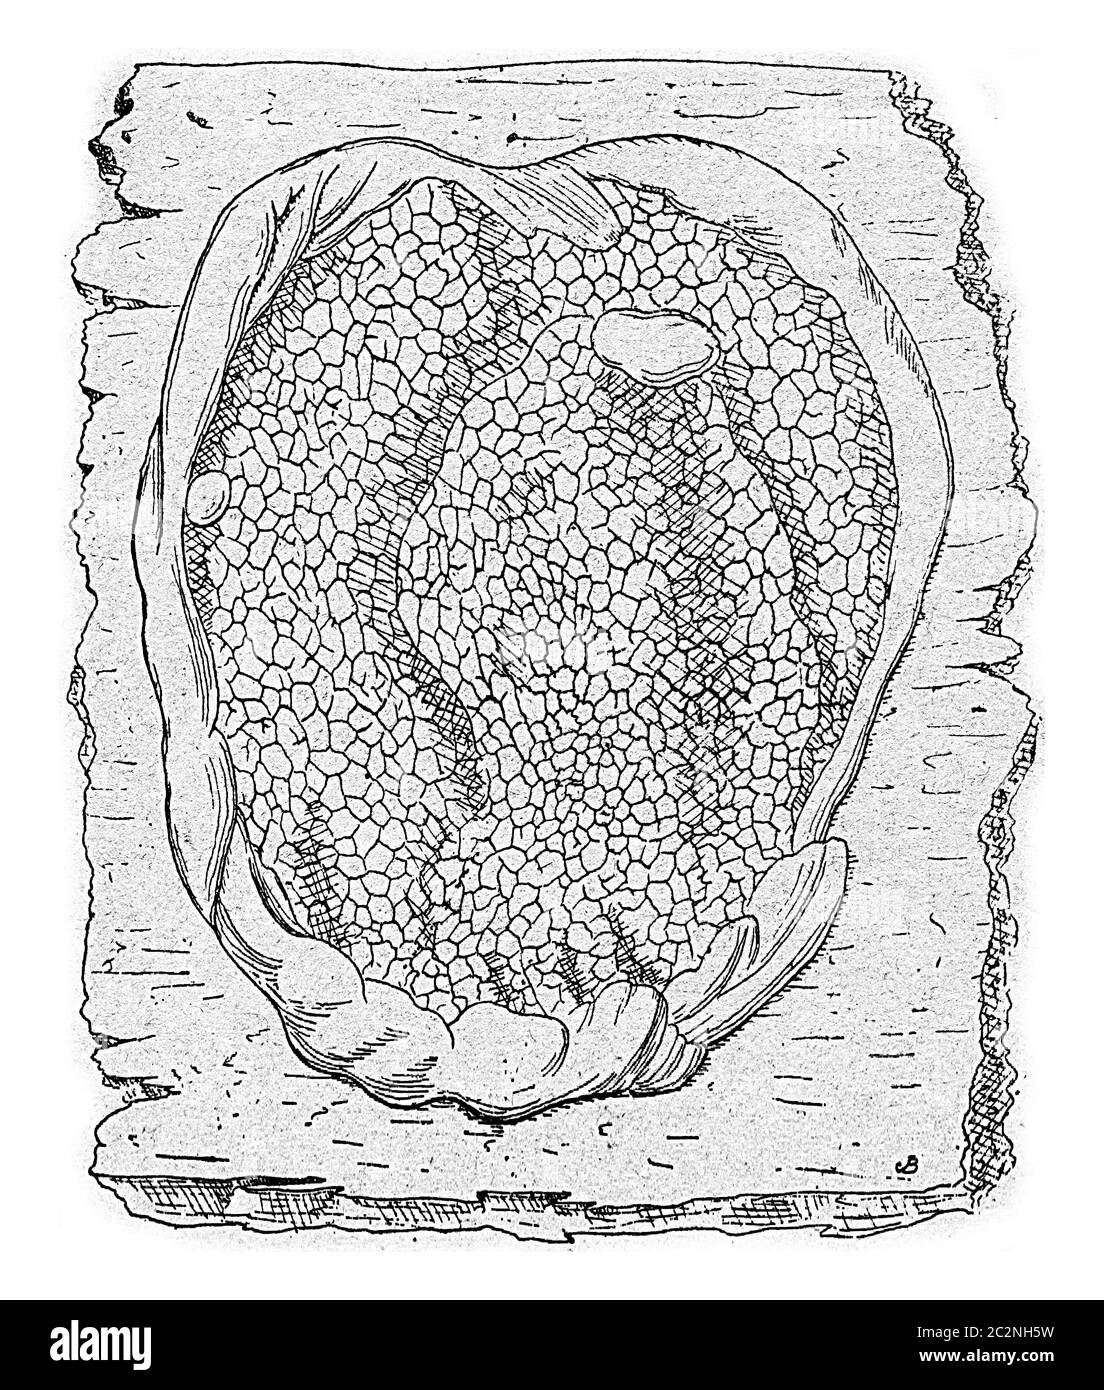 Unit of fruiting lacrymans Merulius, vintage engraved illustration. Stock Photo